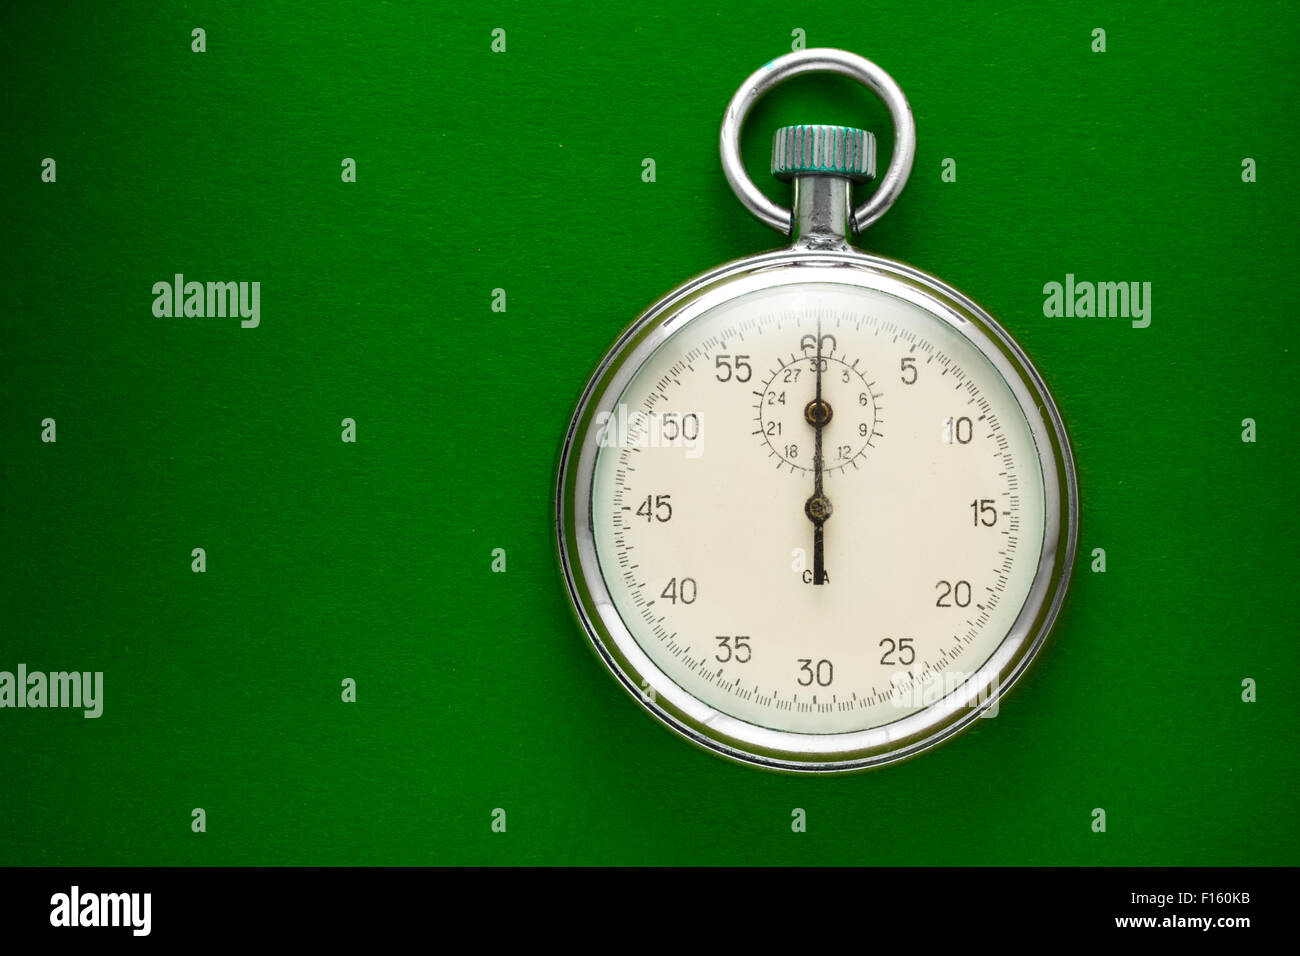 Unico cronometro closeup sul libro verde sullo sfondo Foto Stock